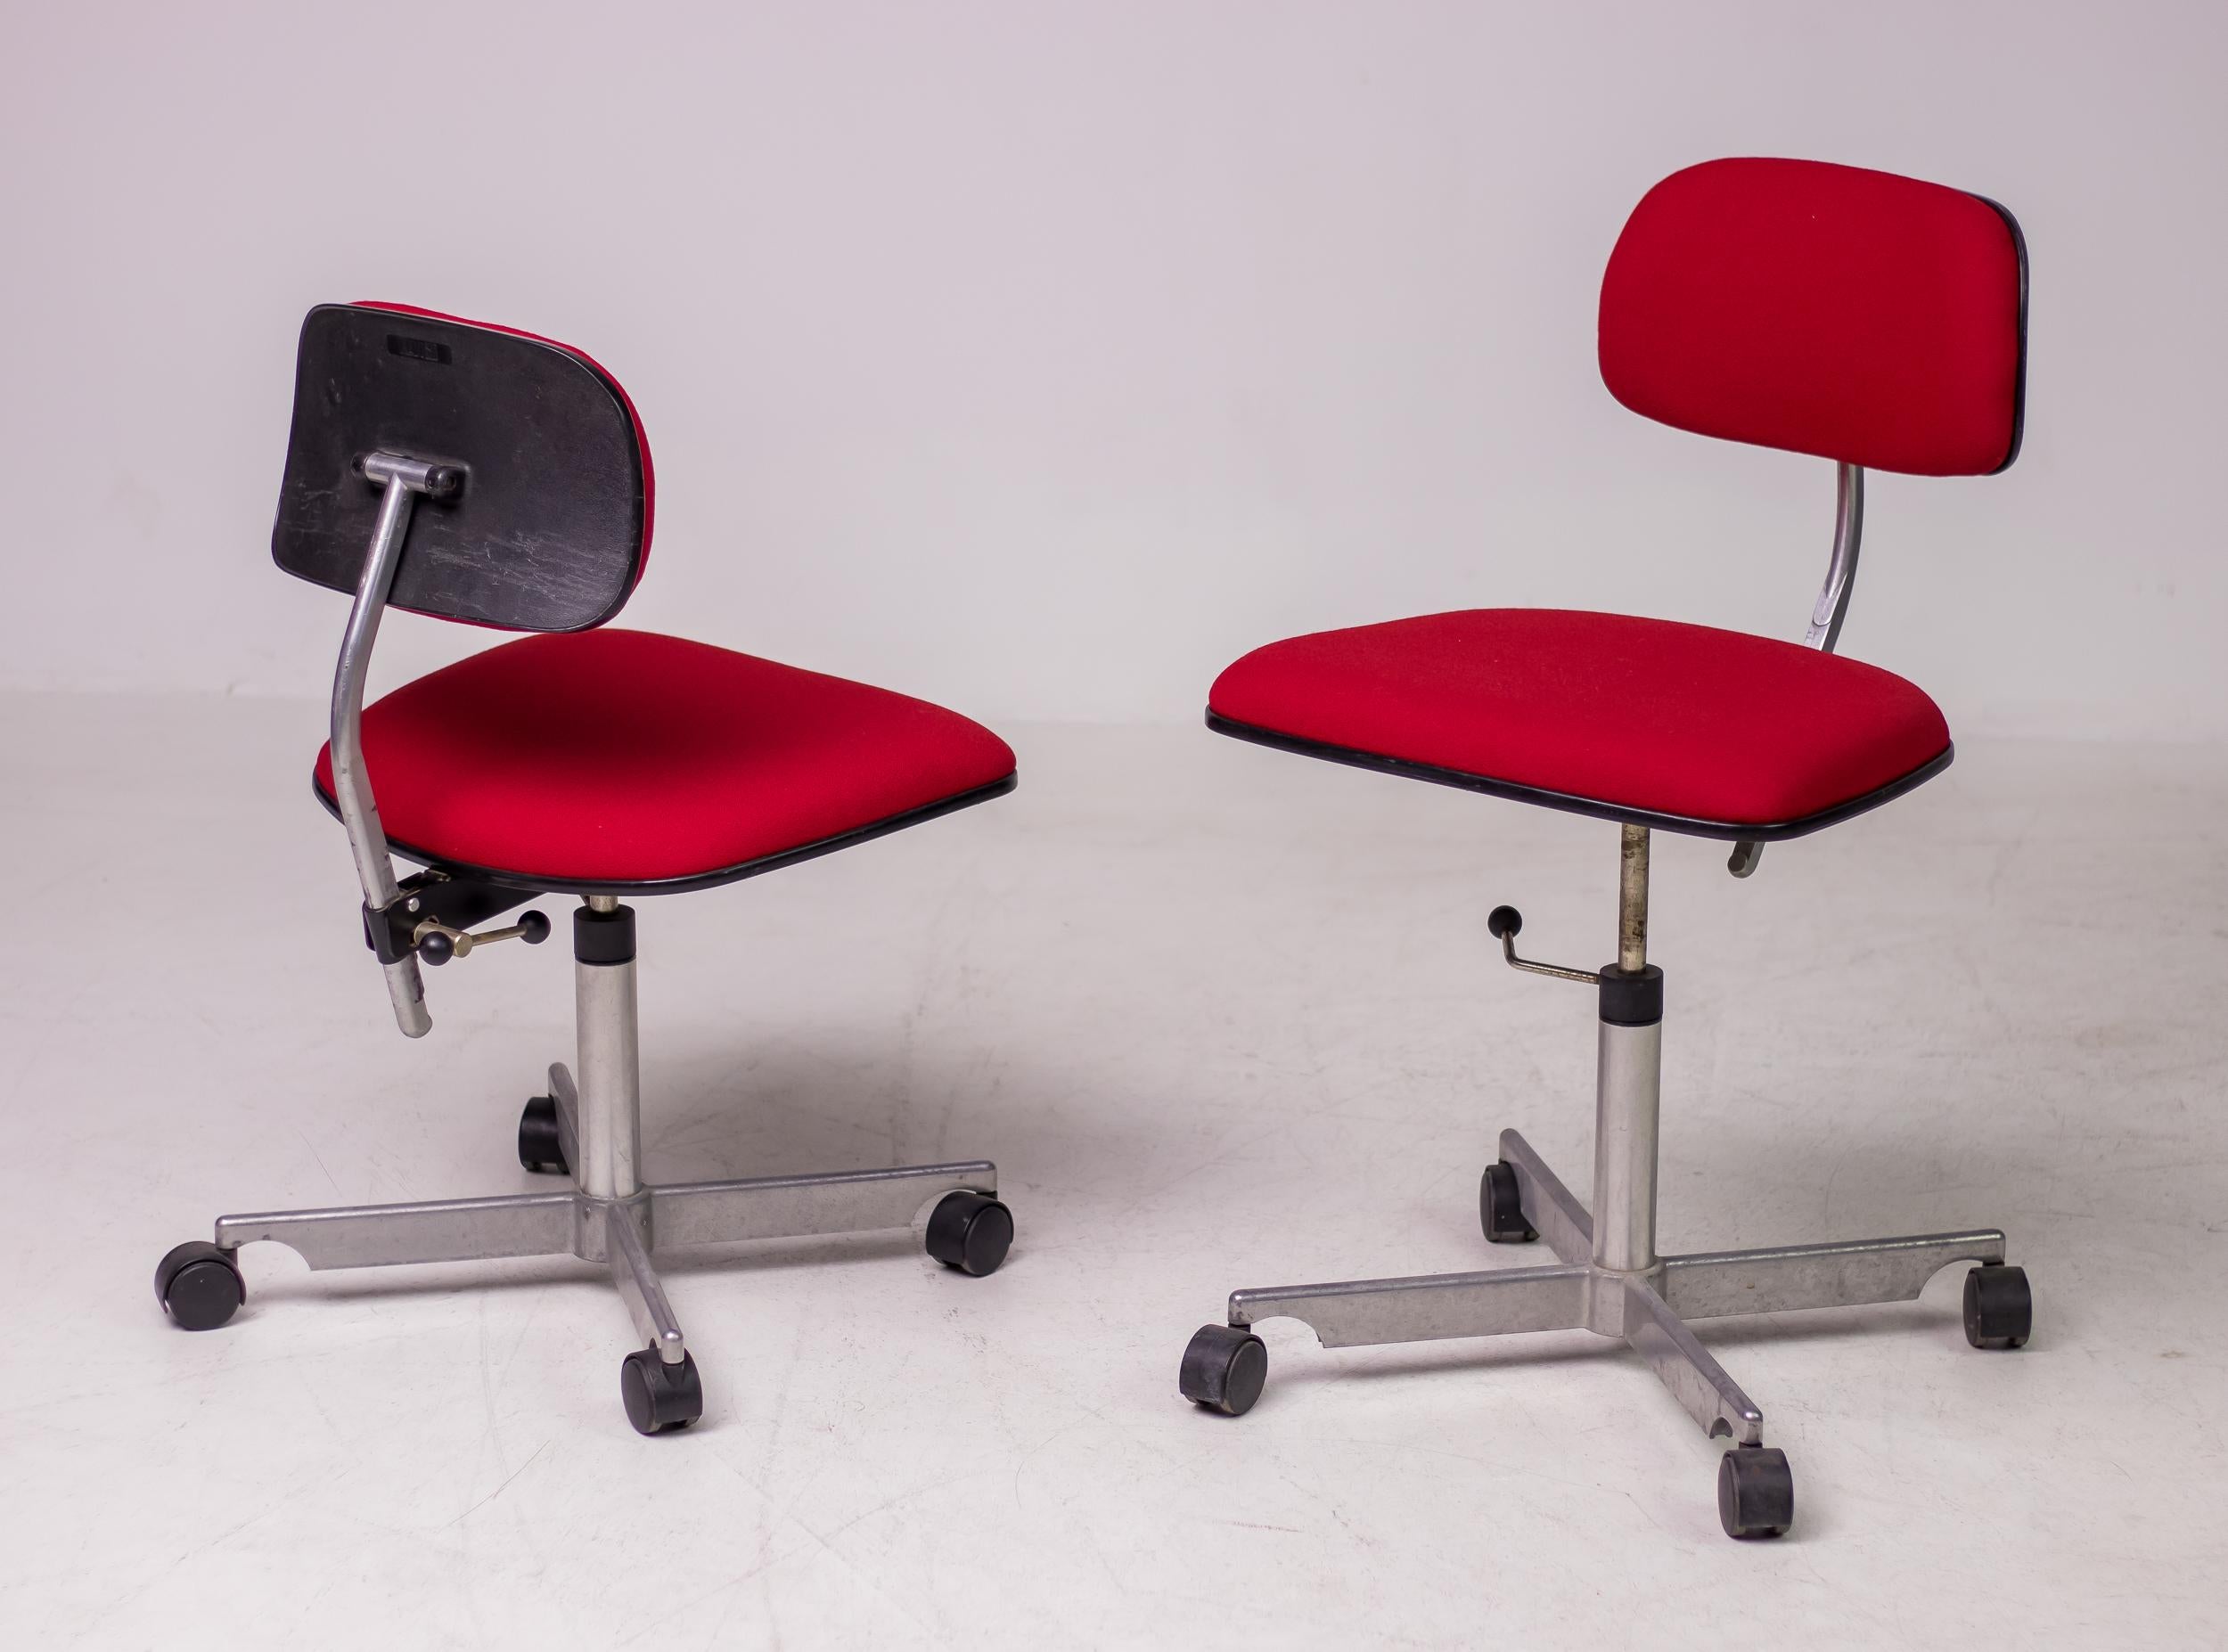 Icône du design, la chaise de travail Kevi offre une hauteur réglable, un dossier à angle réglable et une hauteur d'assise réglable. Étonnamment confortable, la chaise Kevi est l'une des préférées des architectes et des designers pour sa conception